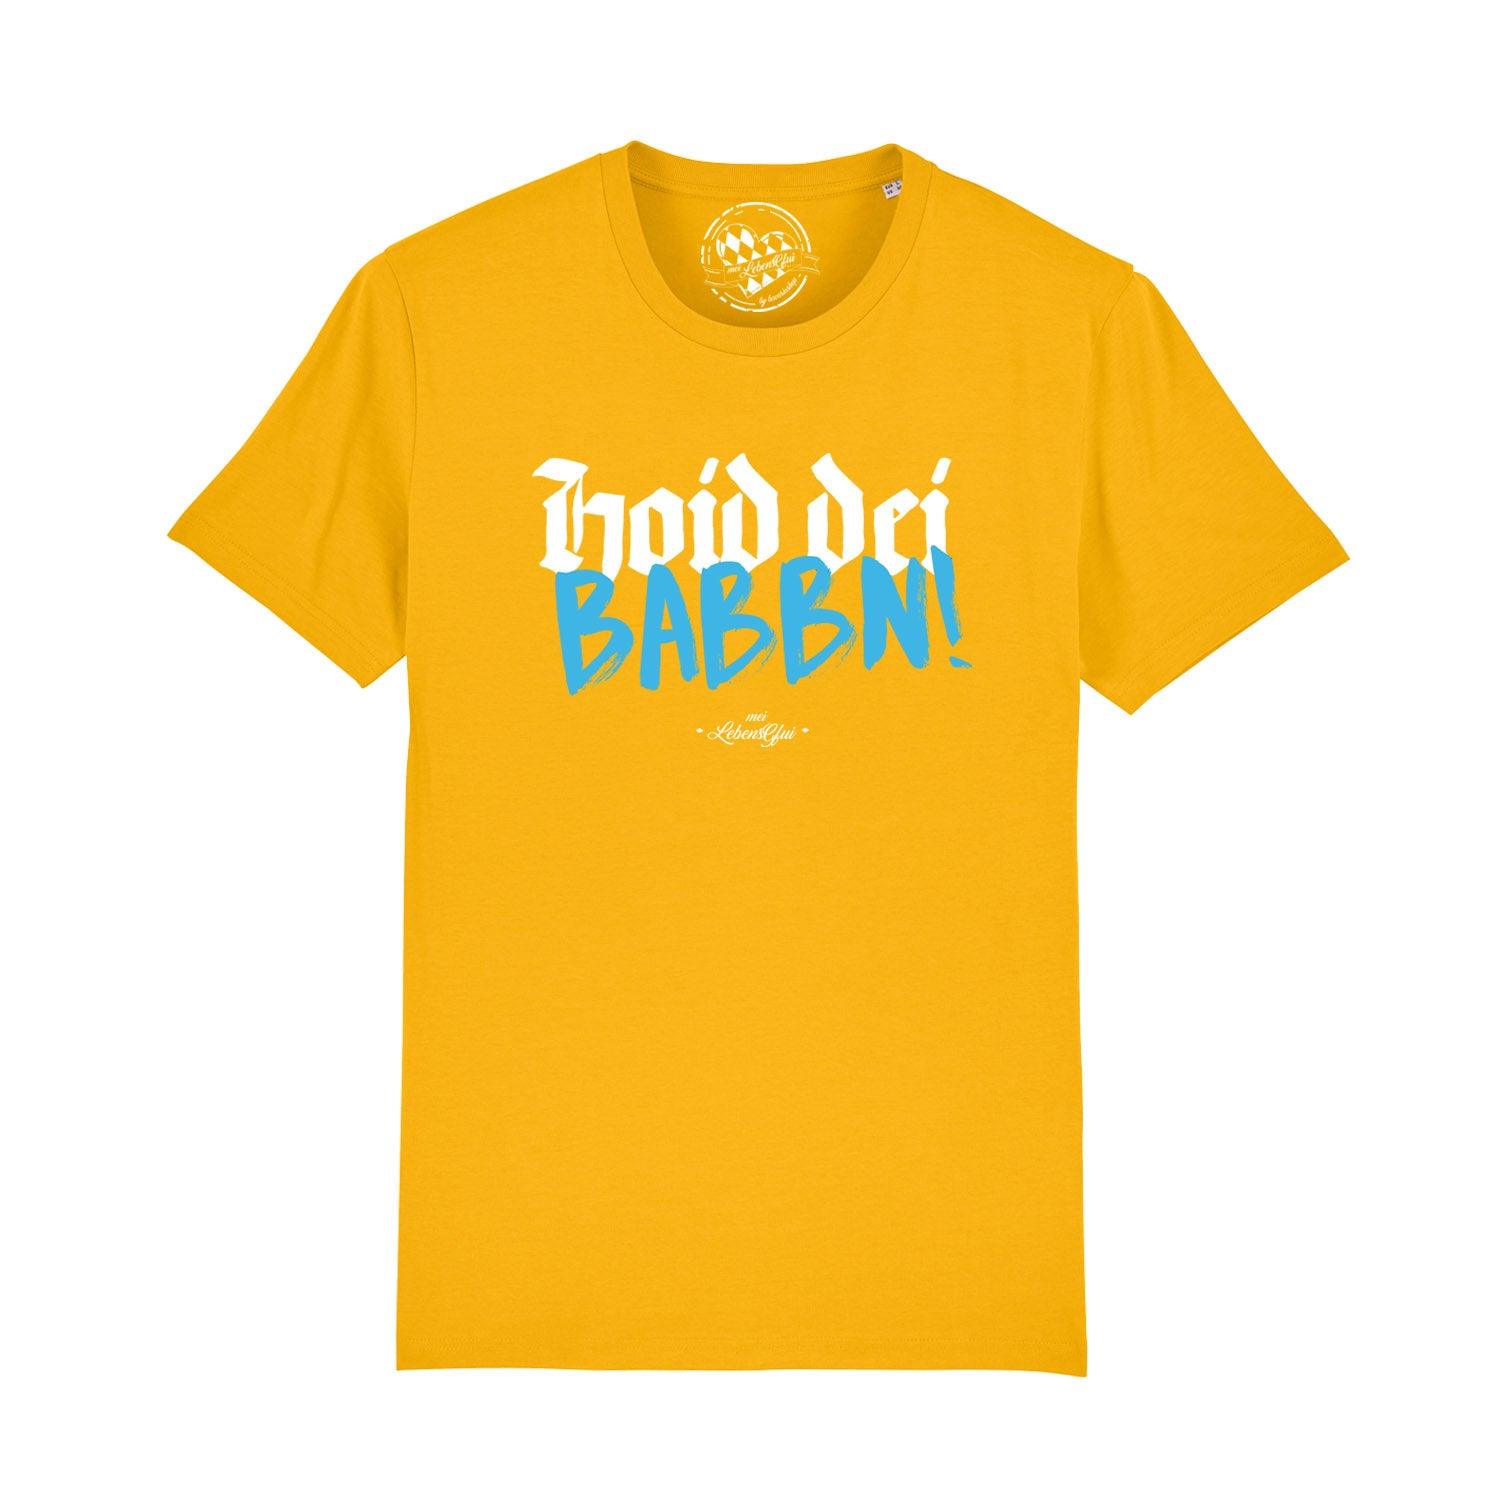 Herren T-Shirt "Hoid dei Babbn" - bavariashop - mei LebensGfui